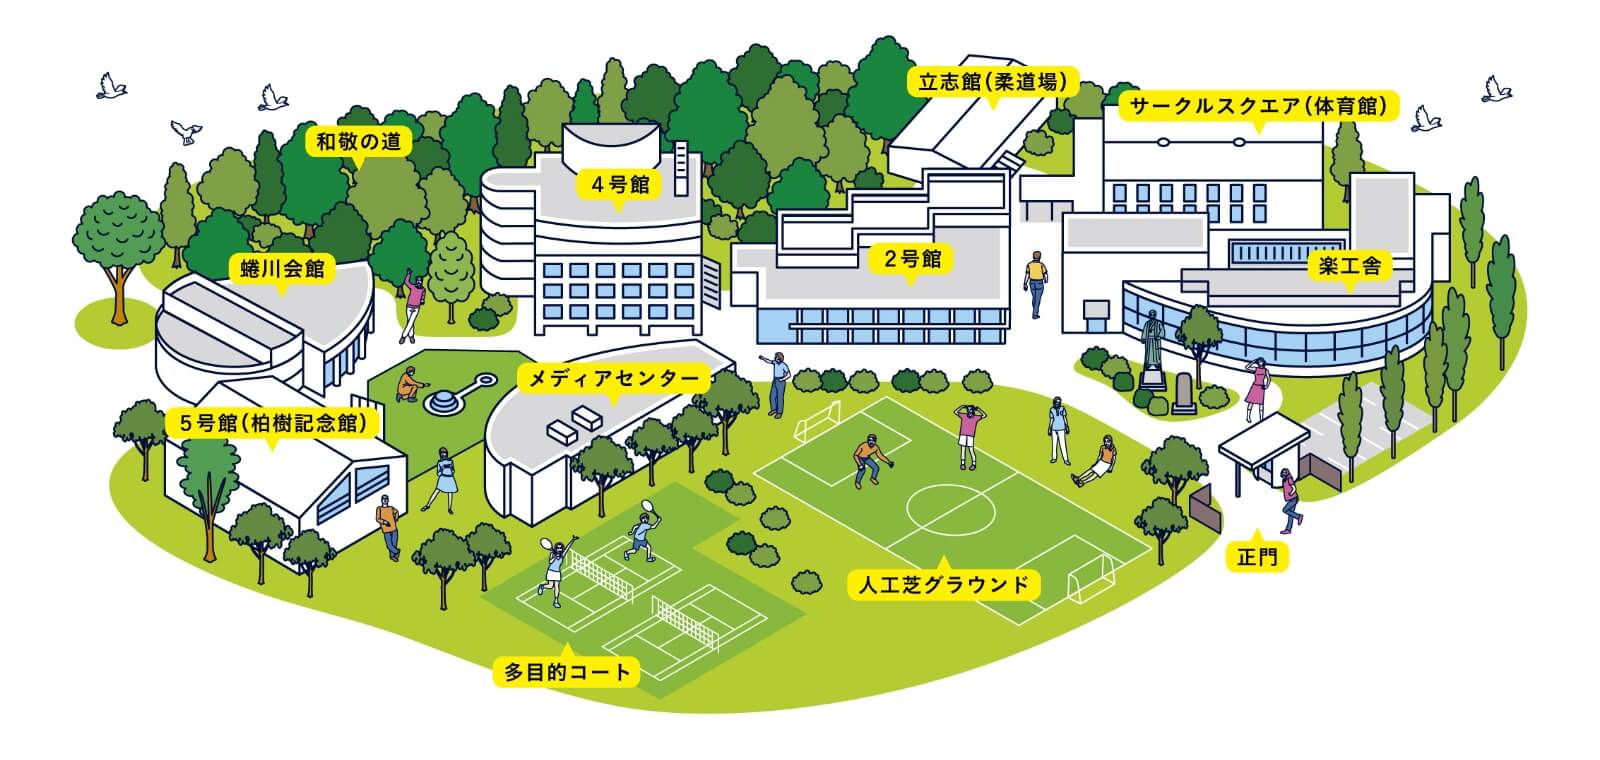 日本文化大學キャンパスマップ